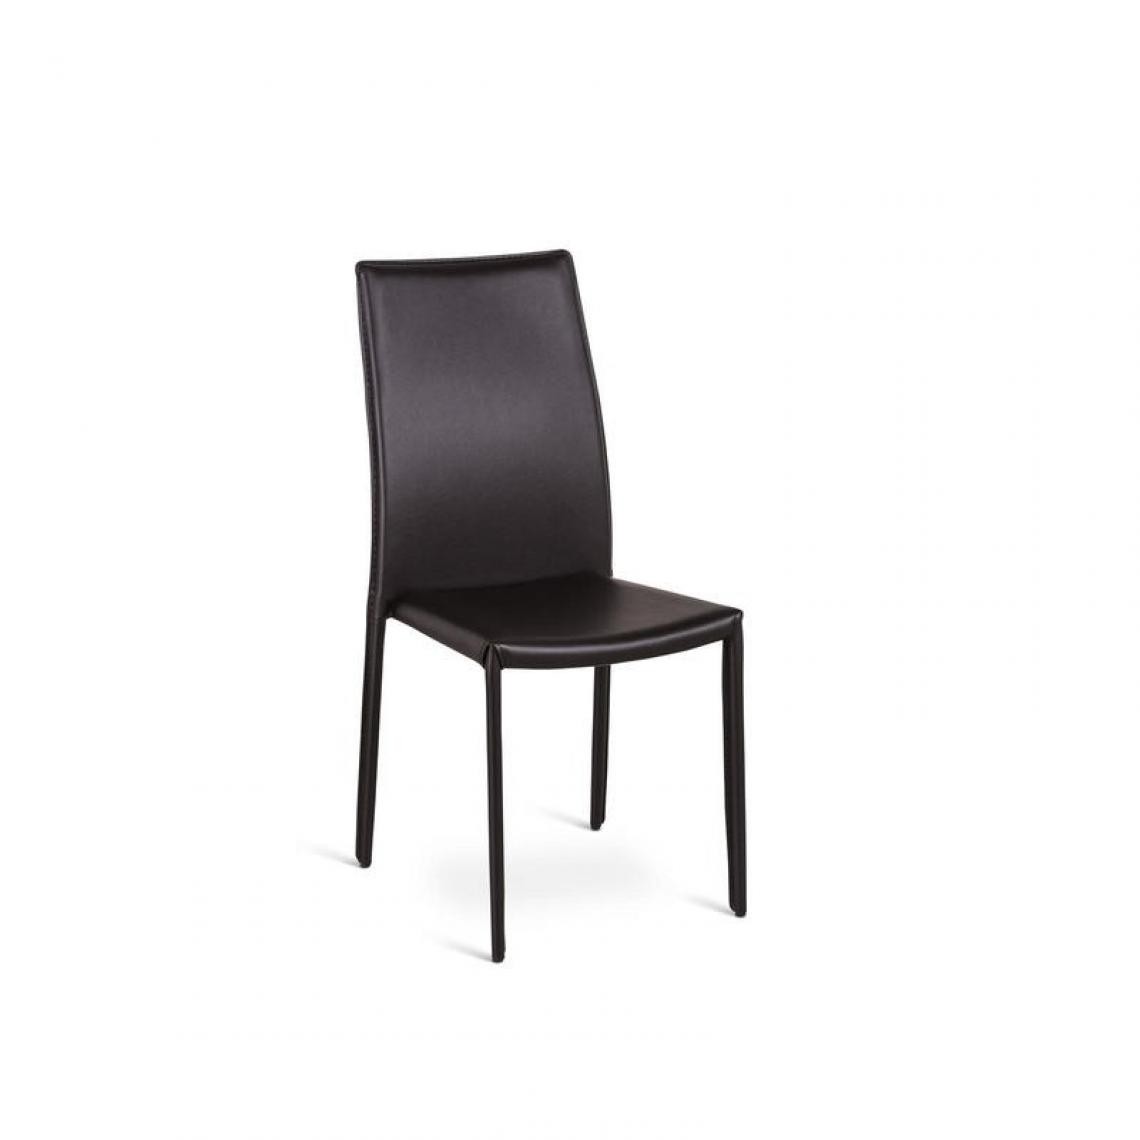 Webmarketpoint - Chaise en simili cuir chocolat structure métal 42x41xh.95 cm - Chaises